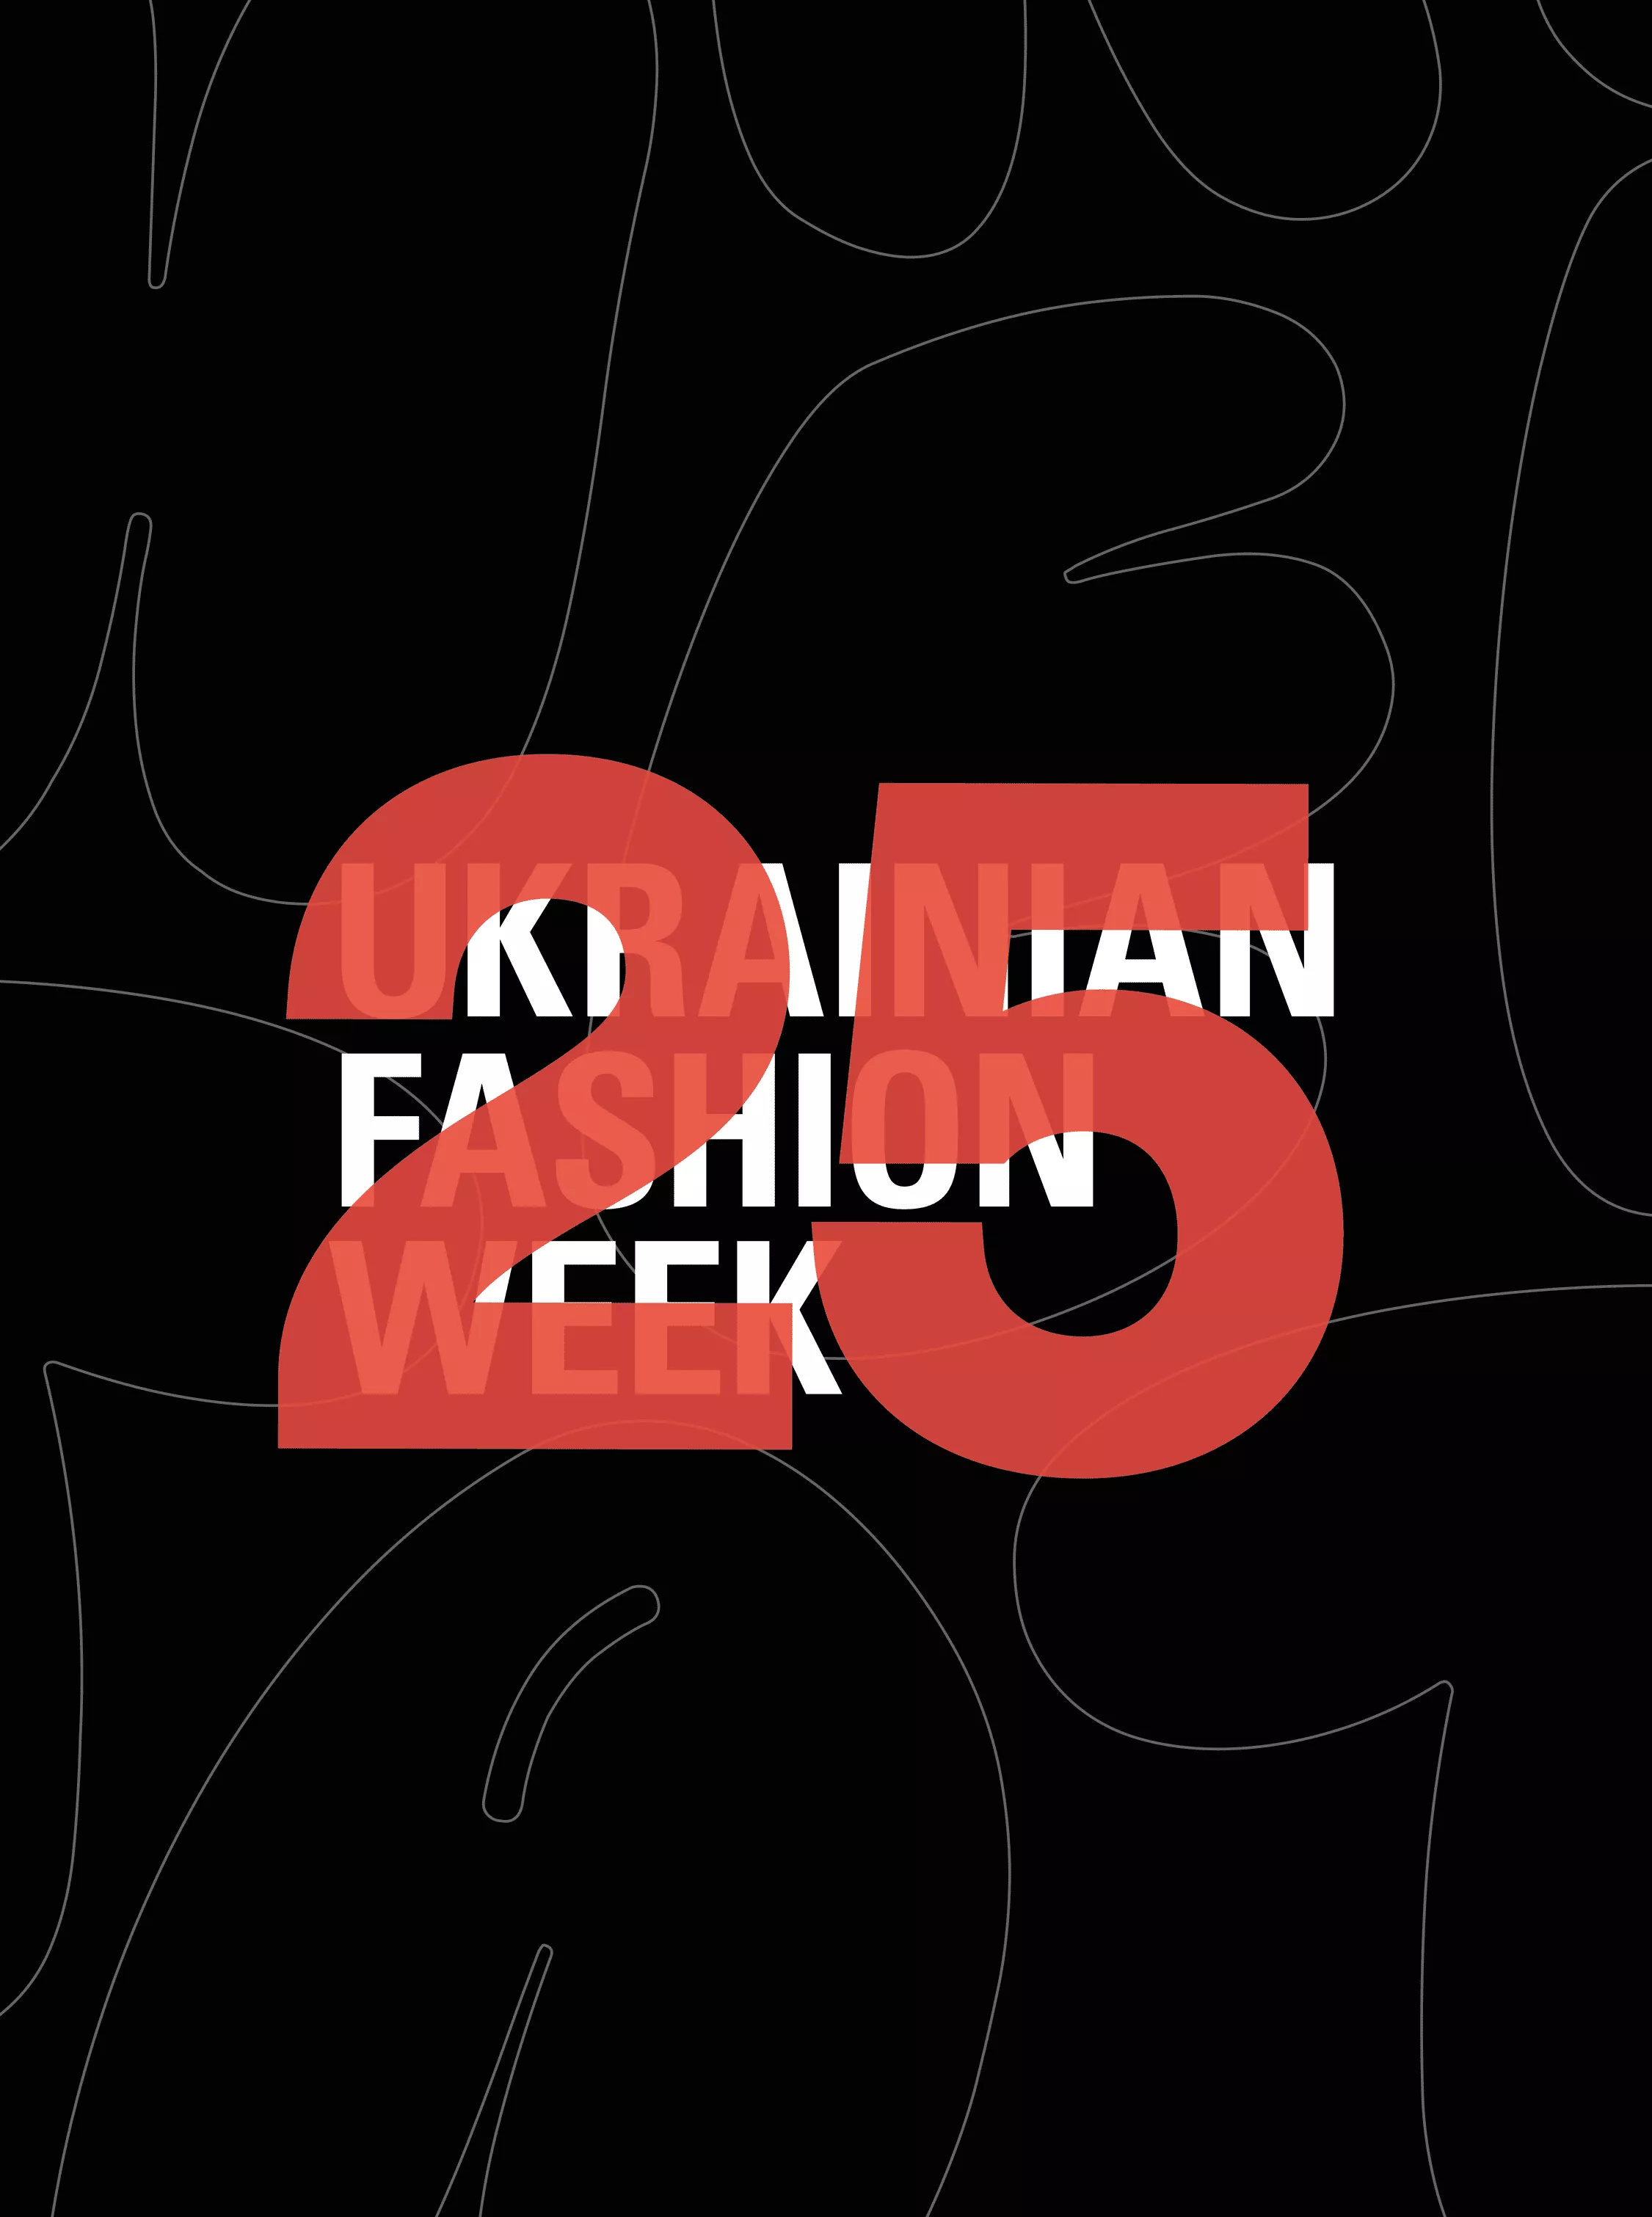  Ukrainian Fashion Week святкує 25-річчя